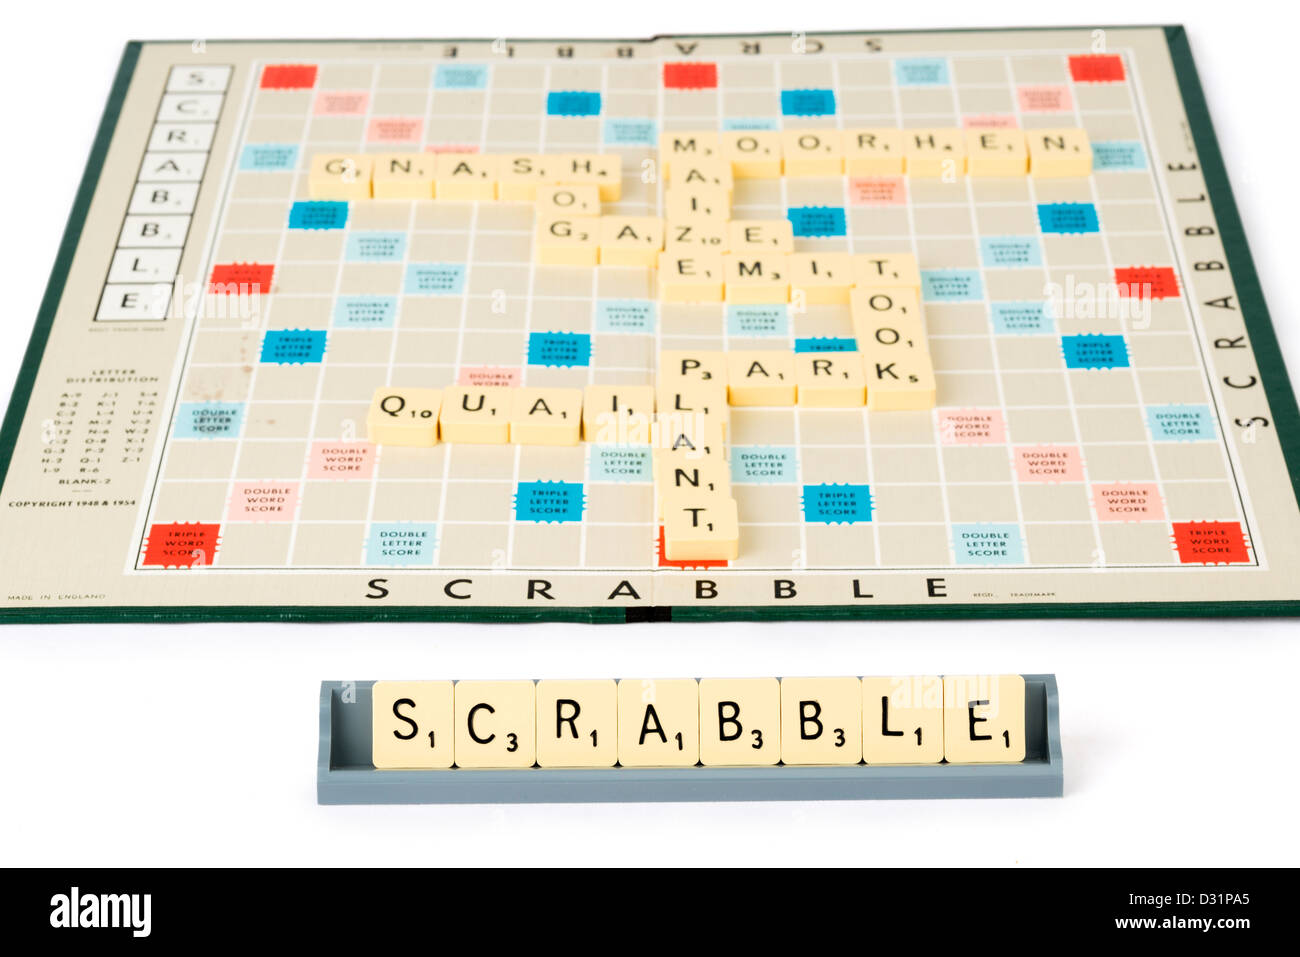 Scrabble board game Stock Photo